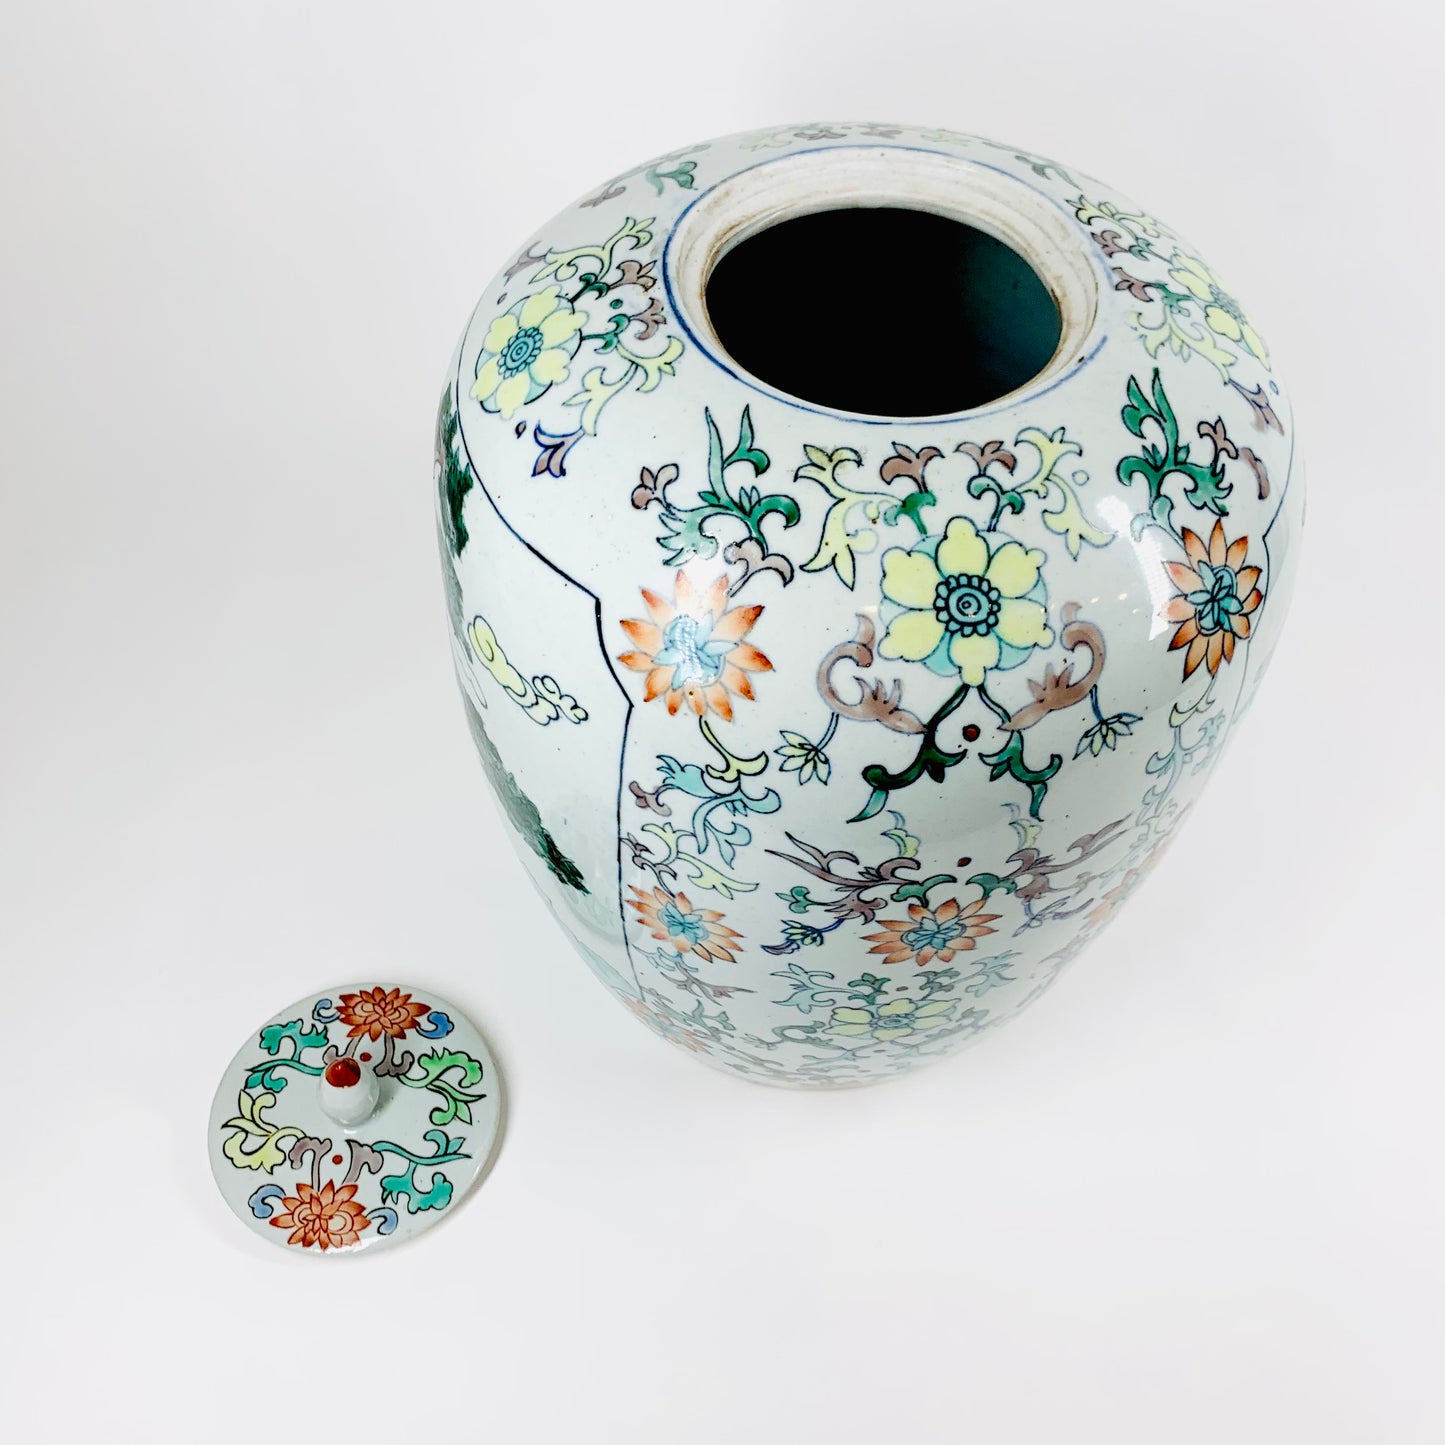 Large antique Chinese Famille Rose porcelain urn/ginger jar